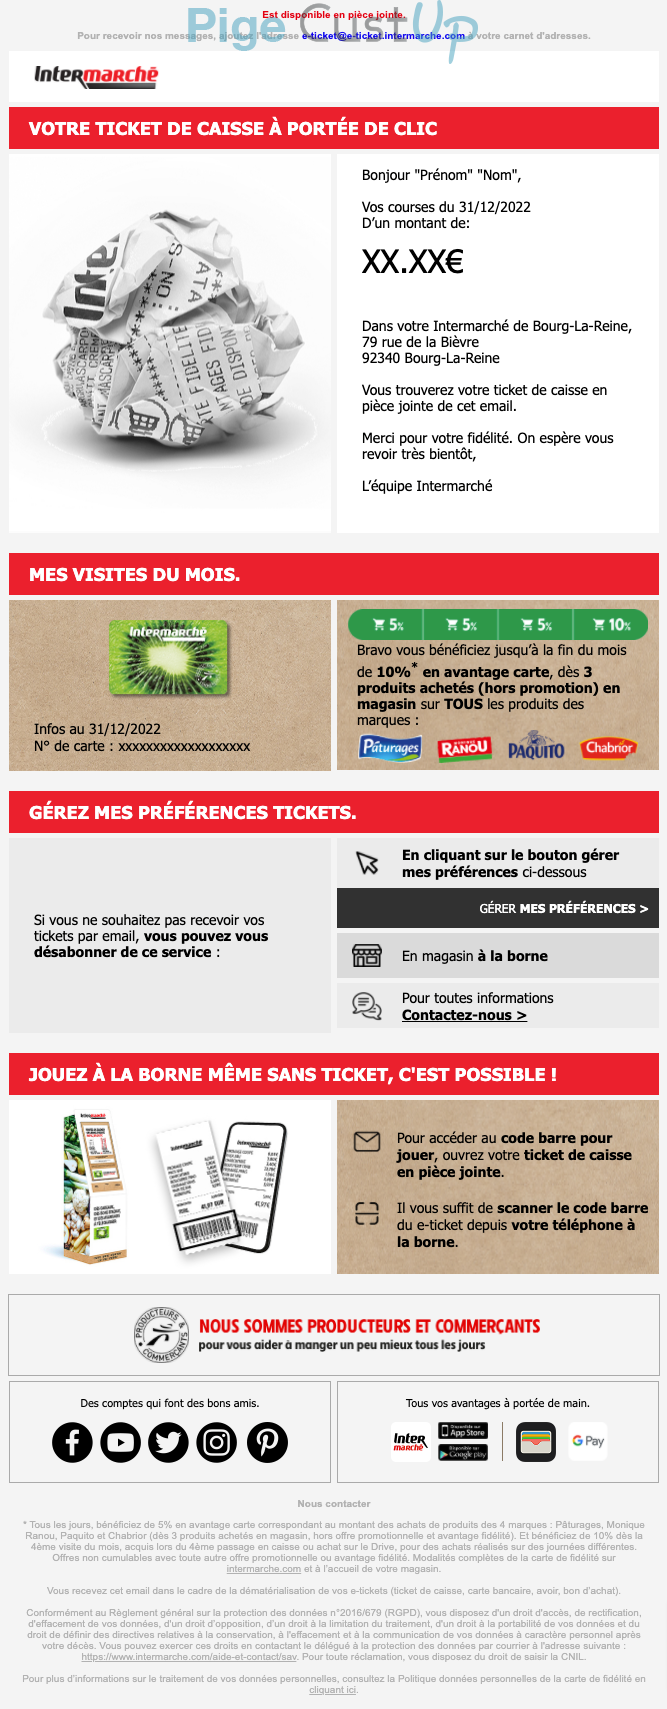 Exemple de Type de media  e-mailing - Intermarché - Transactionnels - Ticket de caisse